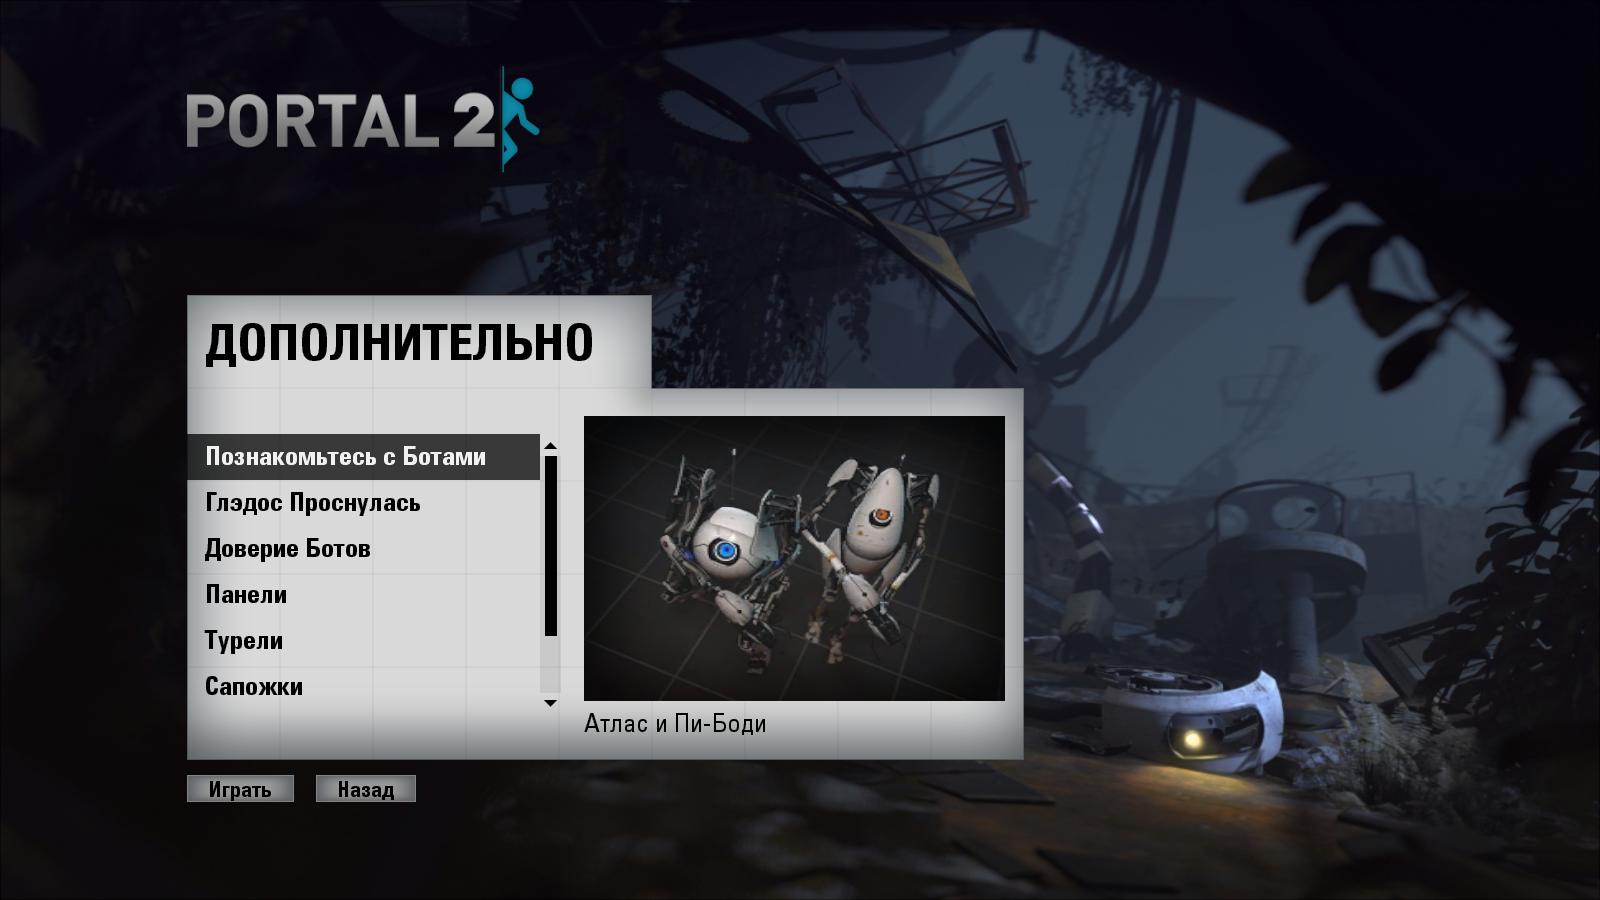 Portal 2 запуск кооператива на пиратке фото 114